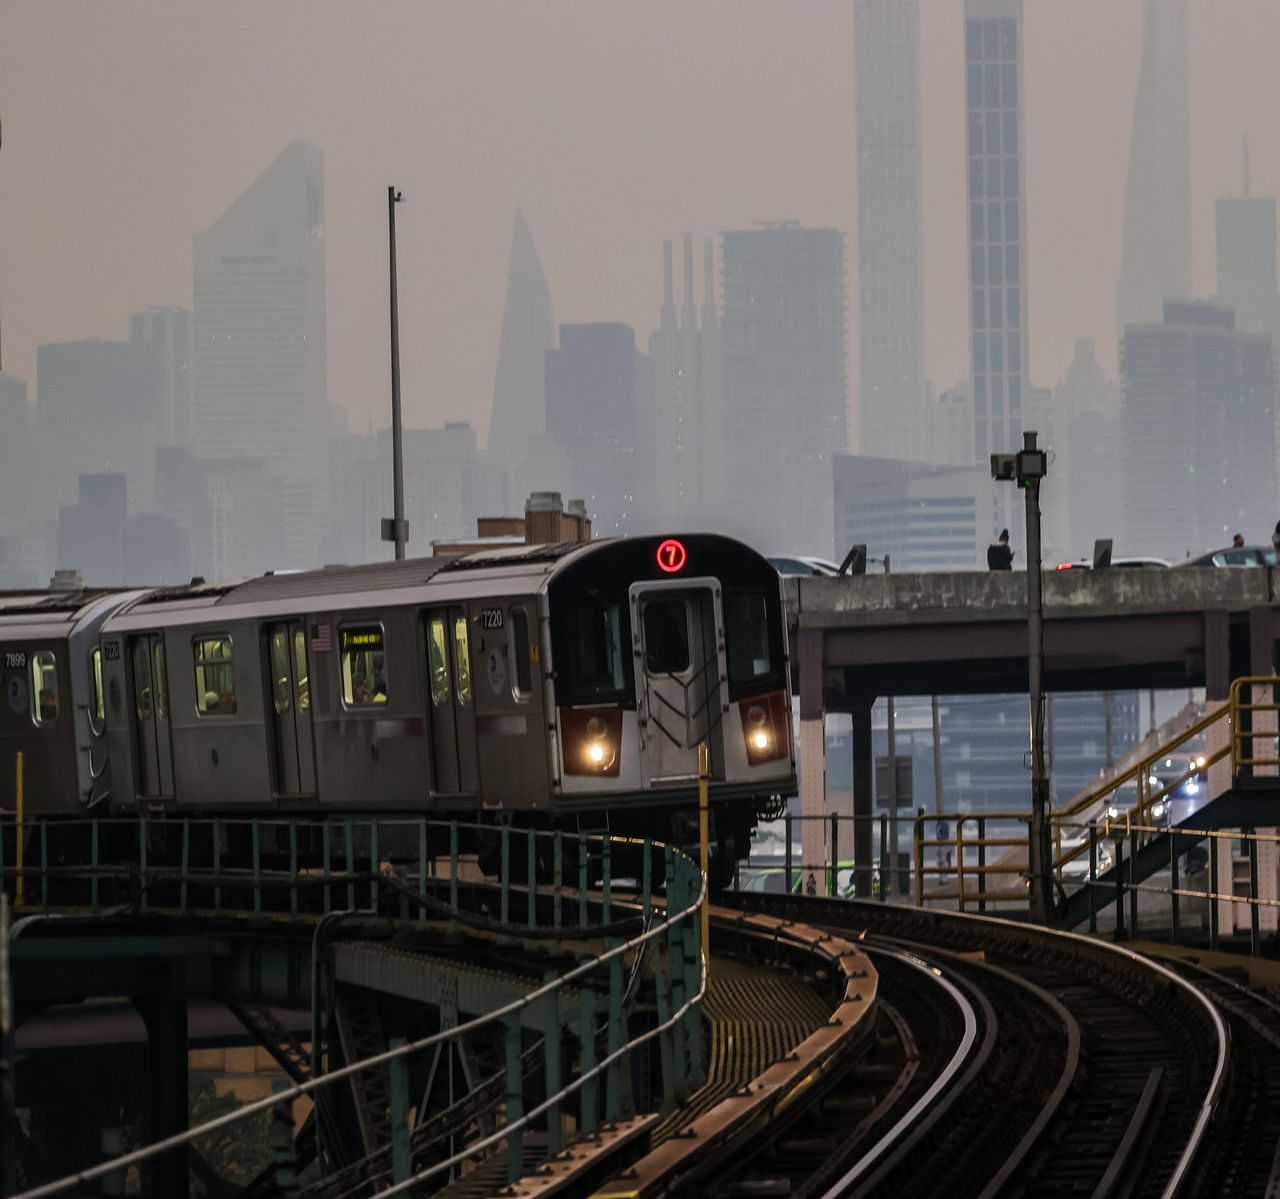 ΝΕΑ ΥΟΡΚΗ, ΗΝΩΜΕΝΕΣ ΠΟΛΙΤΕΙΕΣ - 6 ΙΟΥΝΙΟΥ: Η απόκοσμη εικόνα ενός τρένου καθώς η ποιότητα του αέρα παραμένει κακή στη Νέα Υόρκη, λόγω πυρκαγιών στον Καναδά. Ηνωμένες Πολιτείες στις 6 Ιουνίου 2023. (Photo by Selcuk Acar/Anadolu Agency via Getty Images)